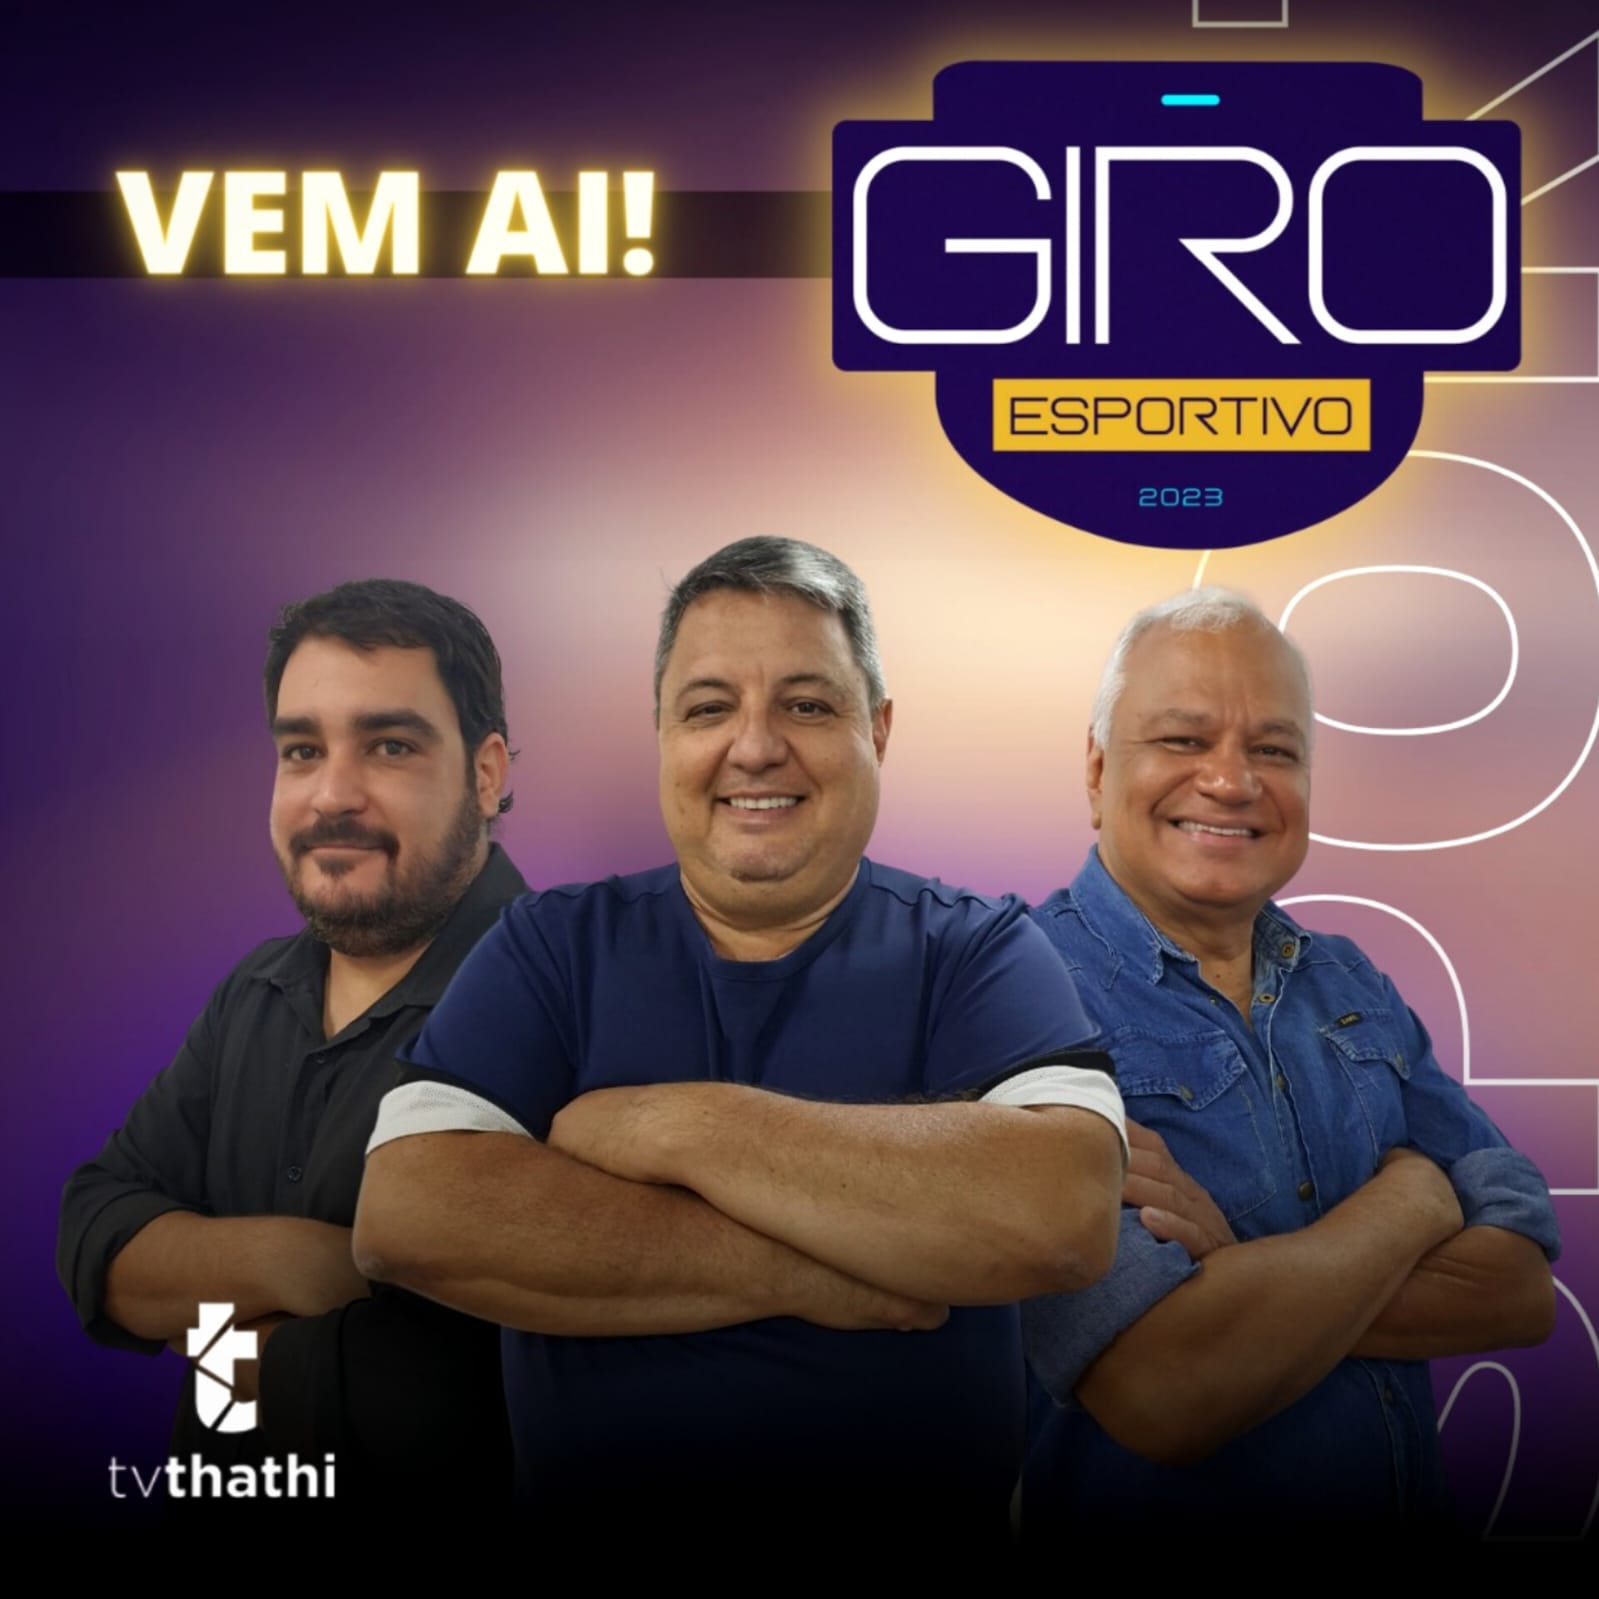 Programa Giro Esportivo estreia nesta segunda-feira no Grupo Thathi Record/Ribeirão Preto